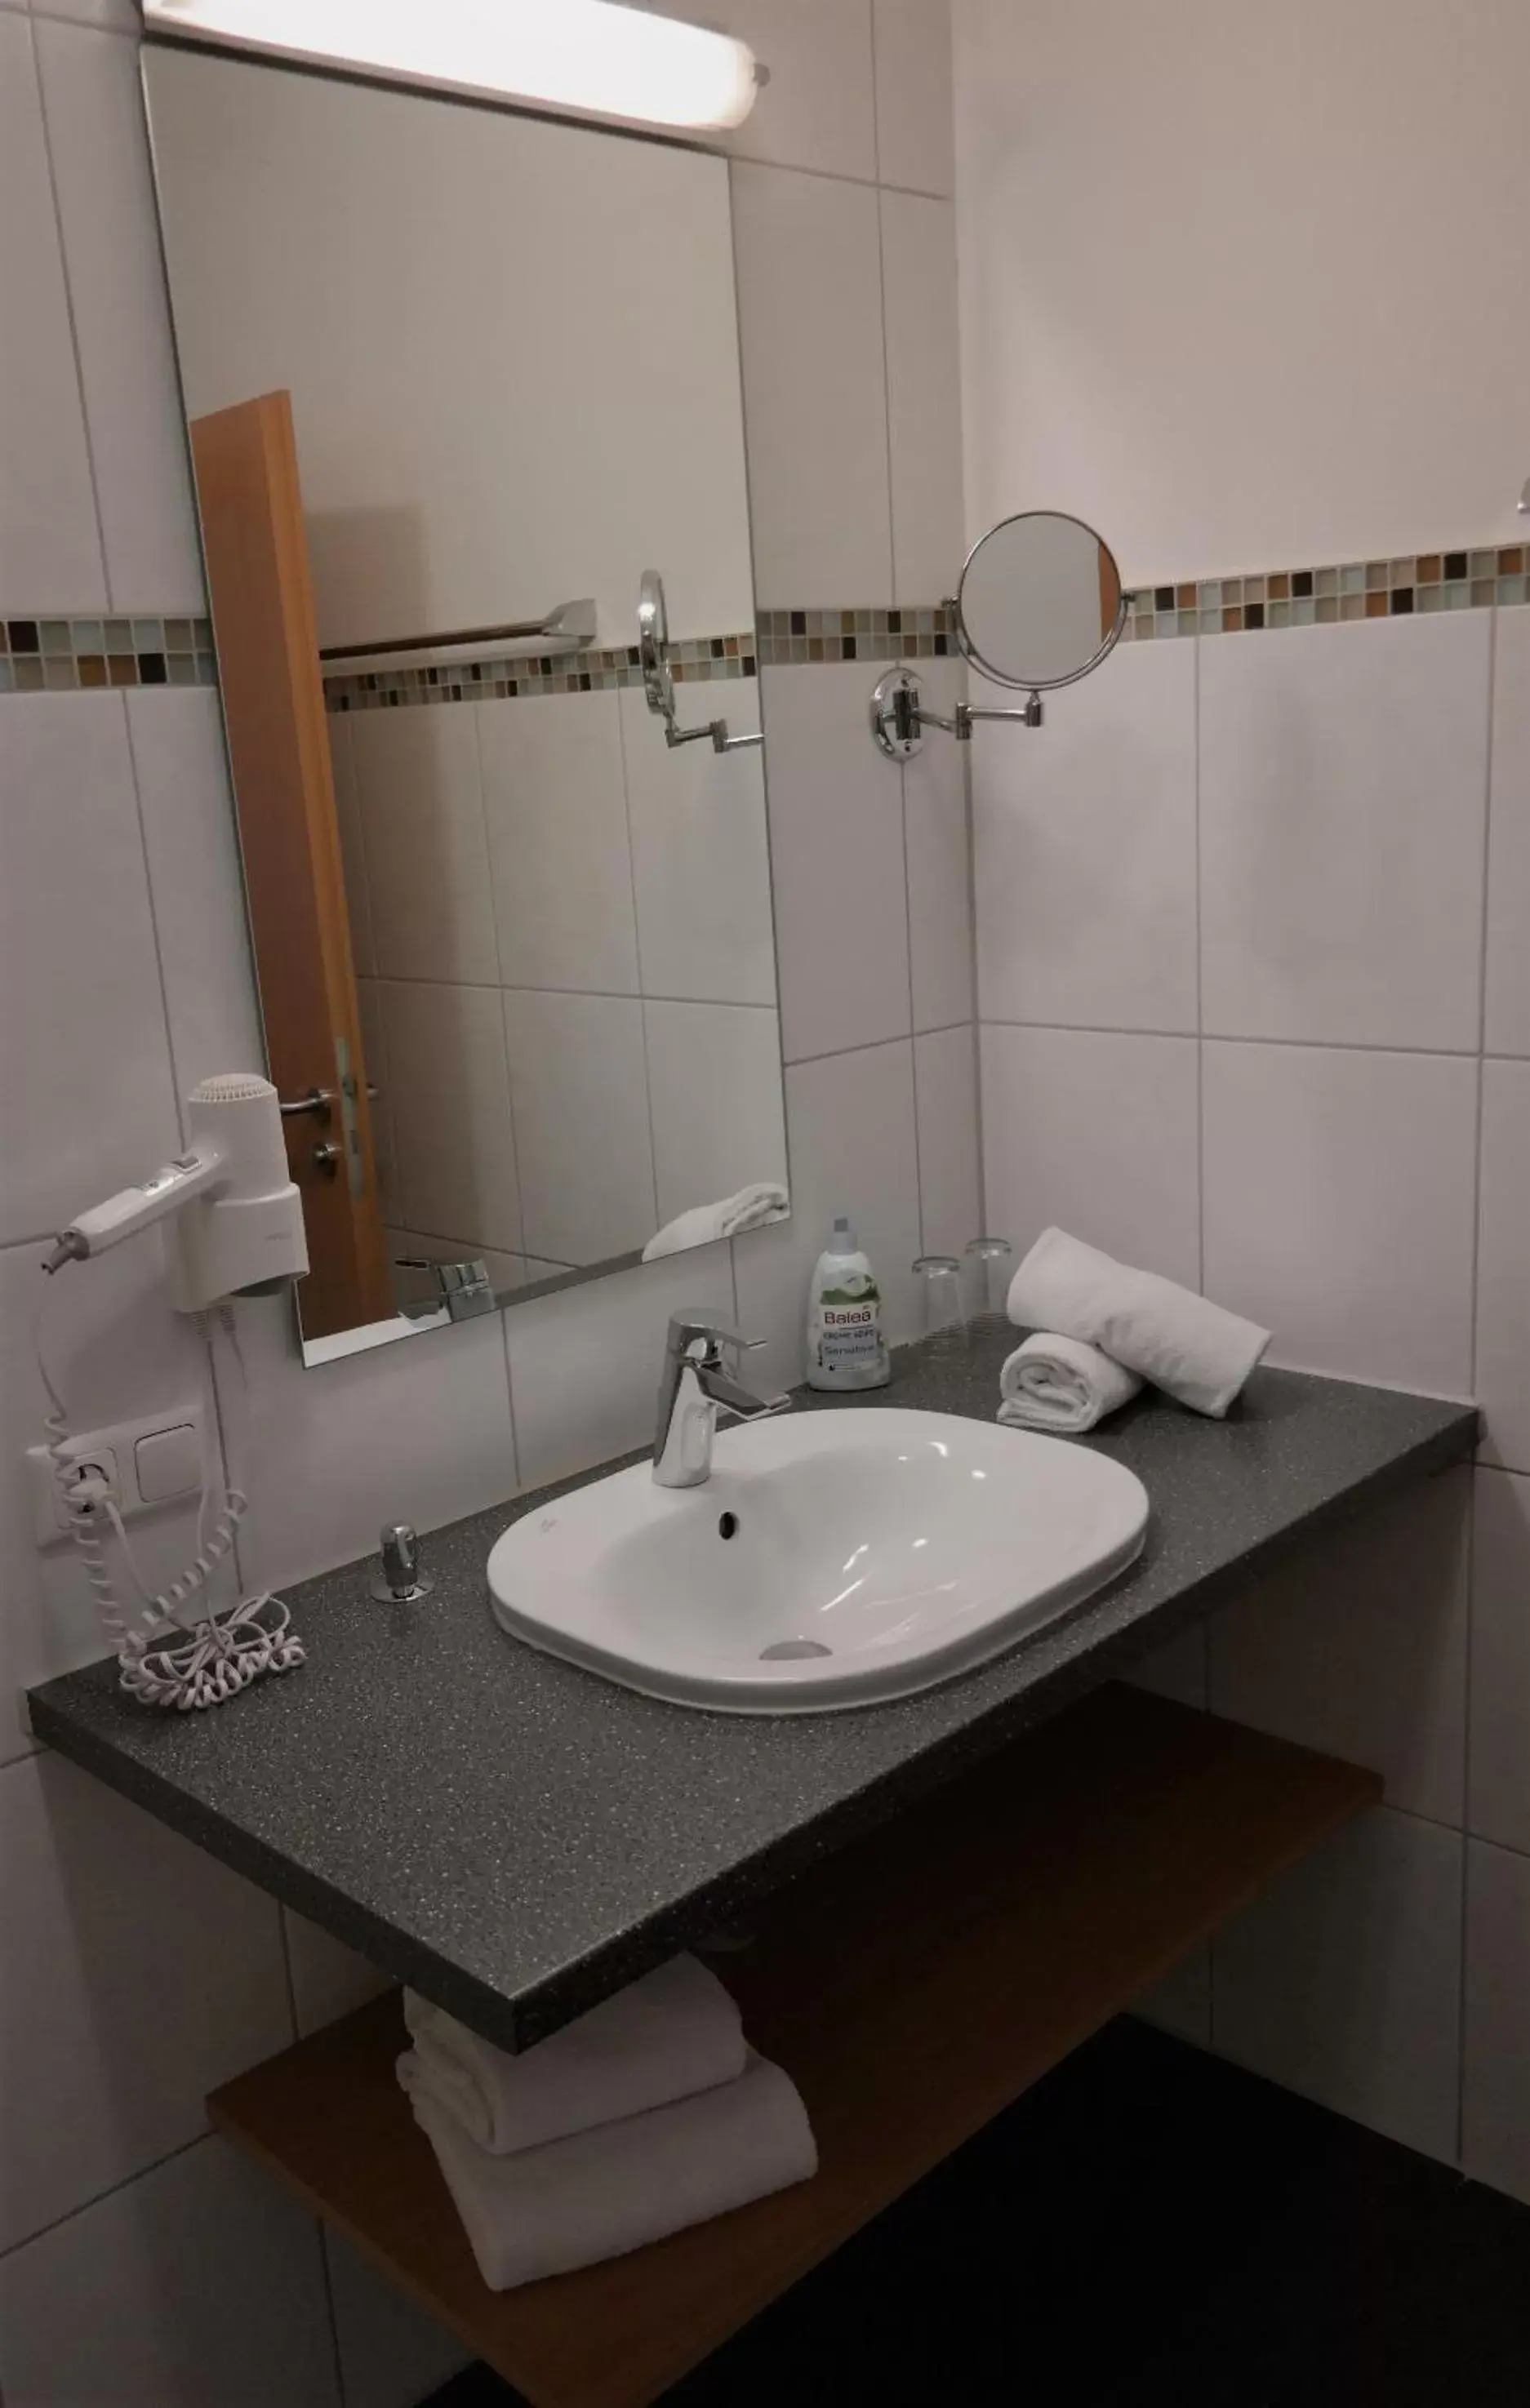 Bathroom in GS Hotel Mindelheim